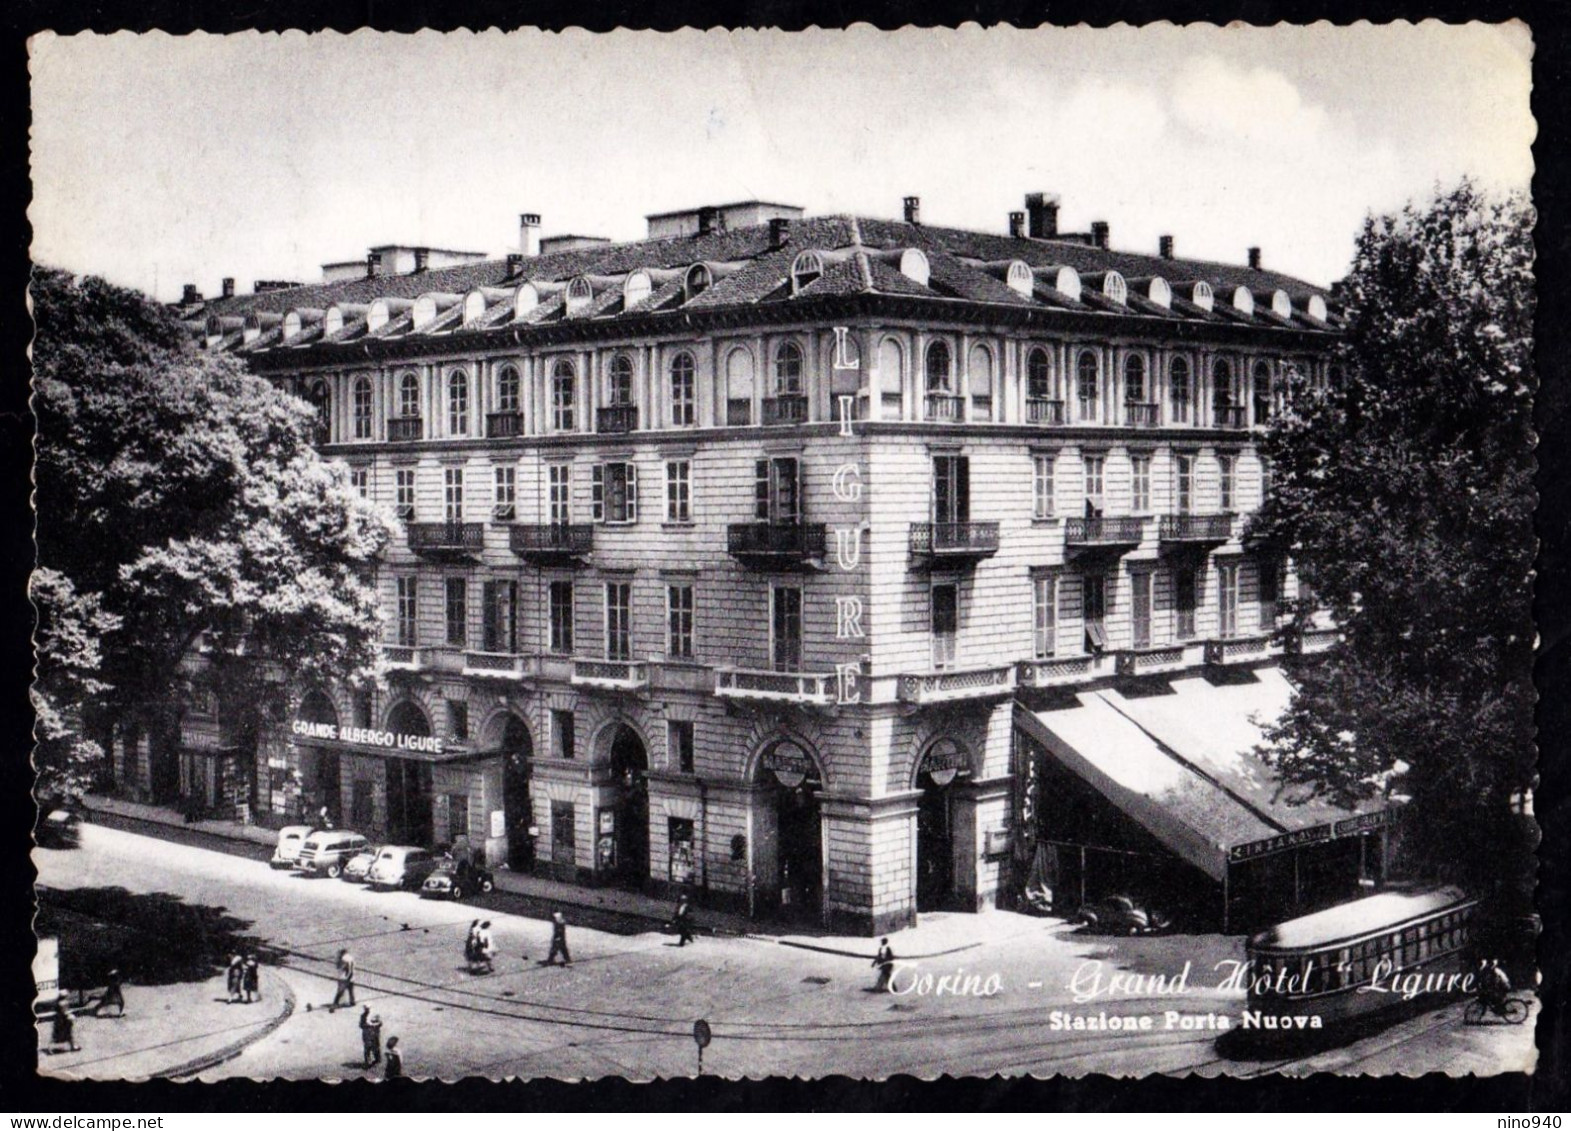 TORINO - Grand Hotel Ligure -  F/G - V: 1952 - T -  Stazione Porta Nuova - Cafes, Hotels & Restaurants